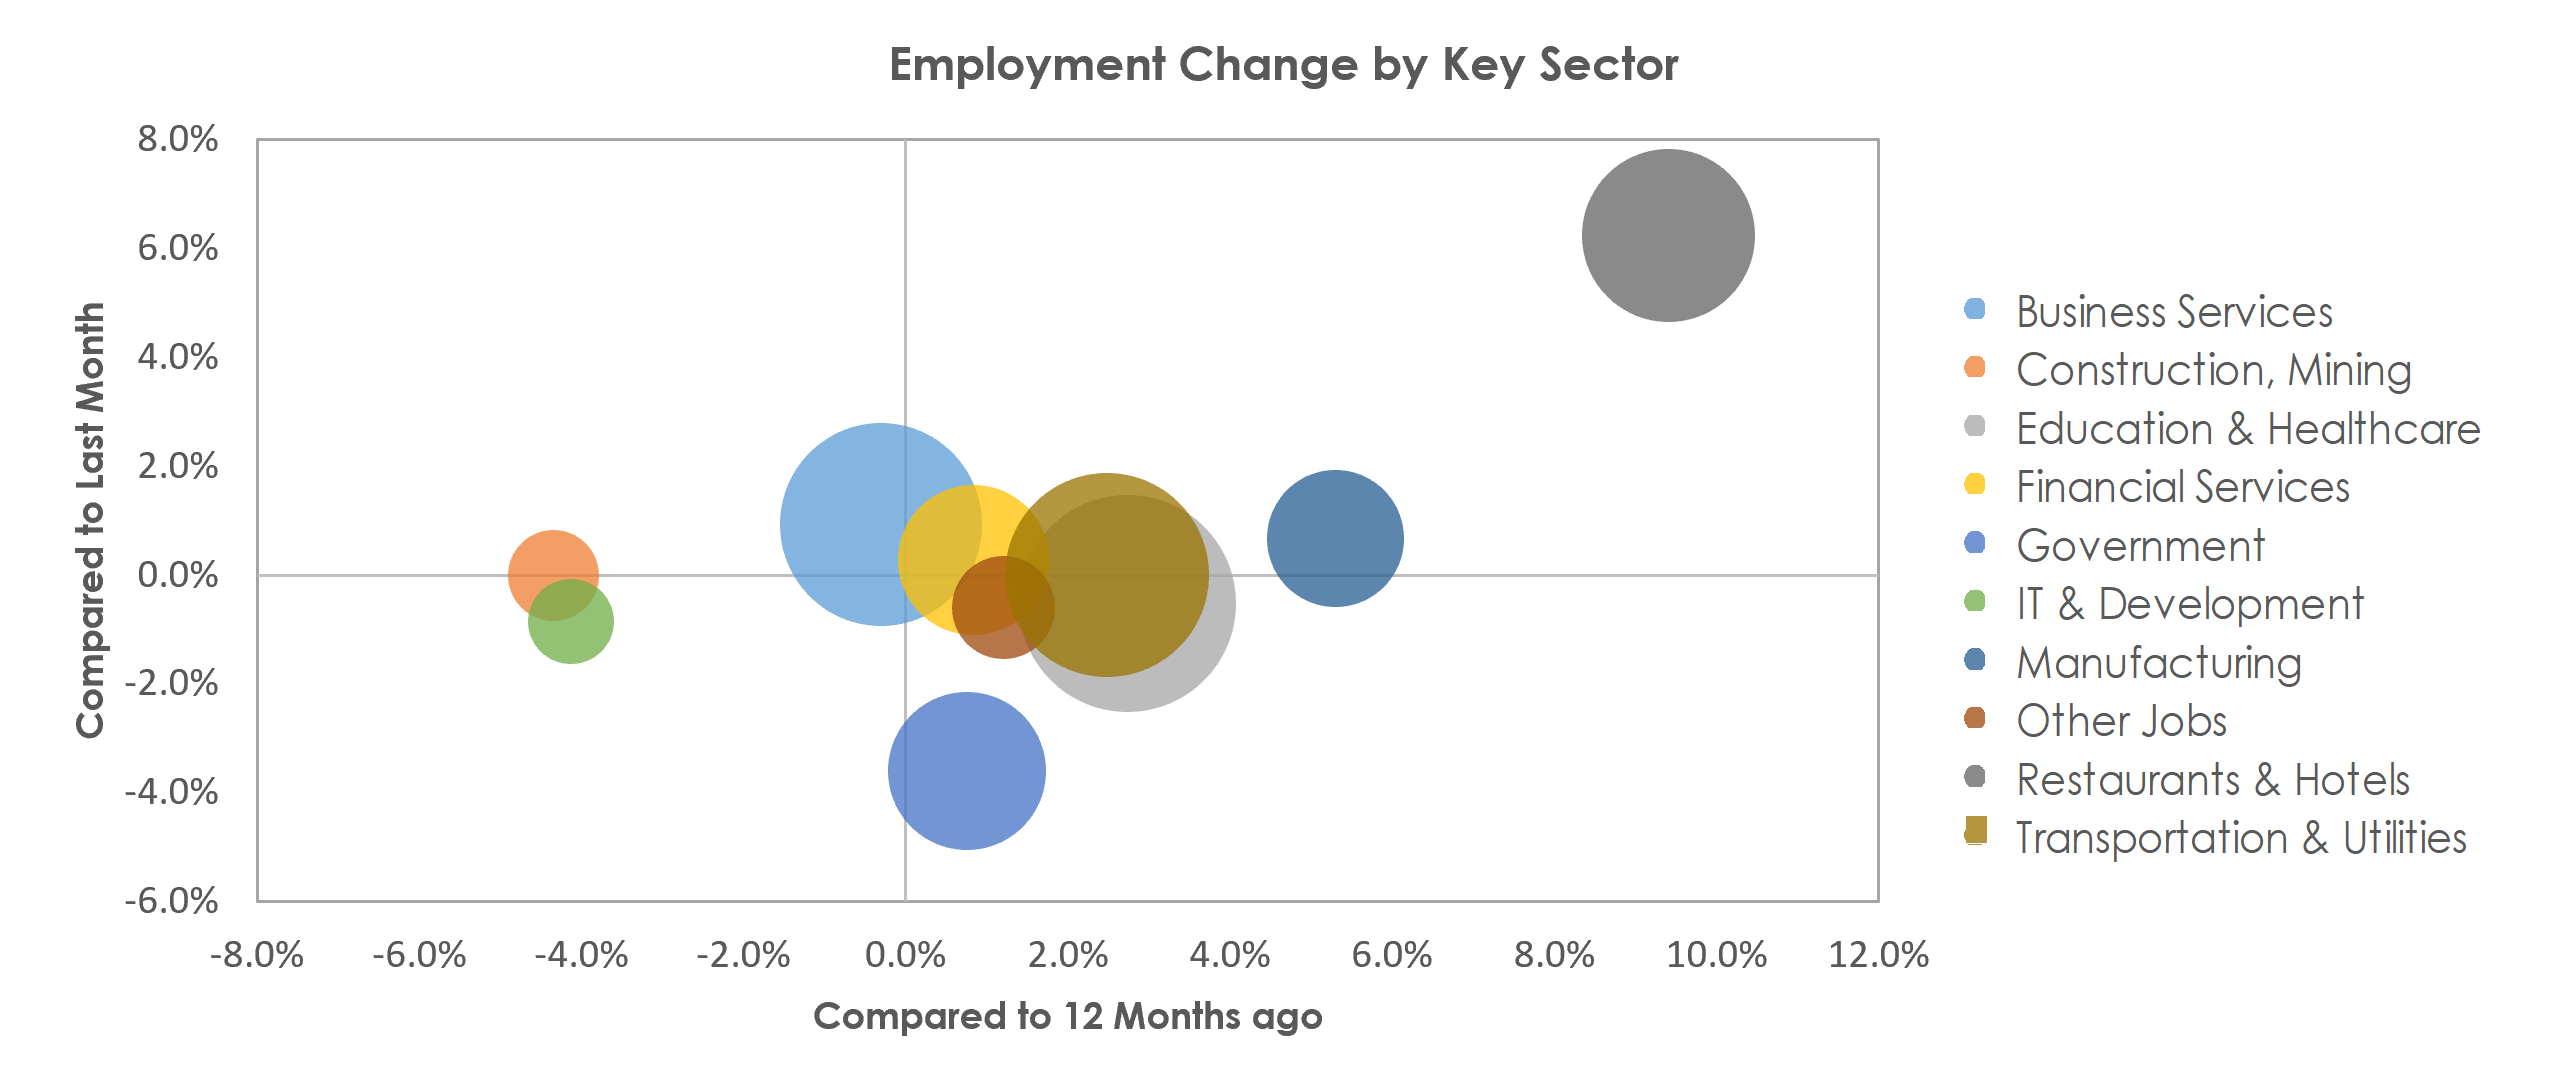 Bridgeport-Stamford-Norwalk, CT Unemployment by Industry July 2022